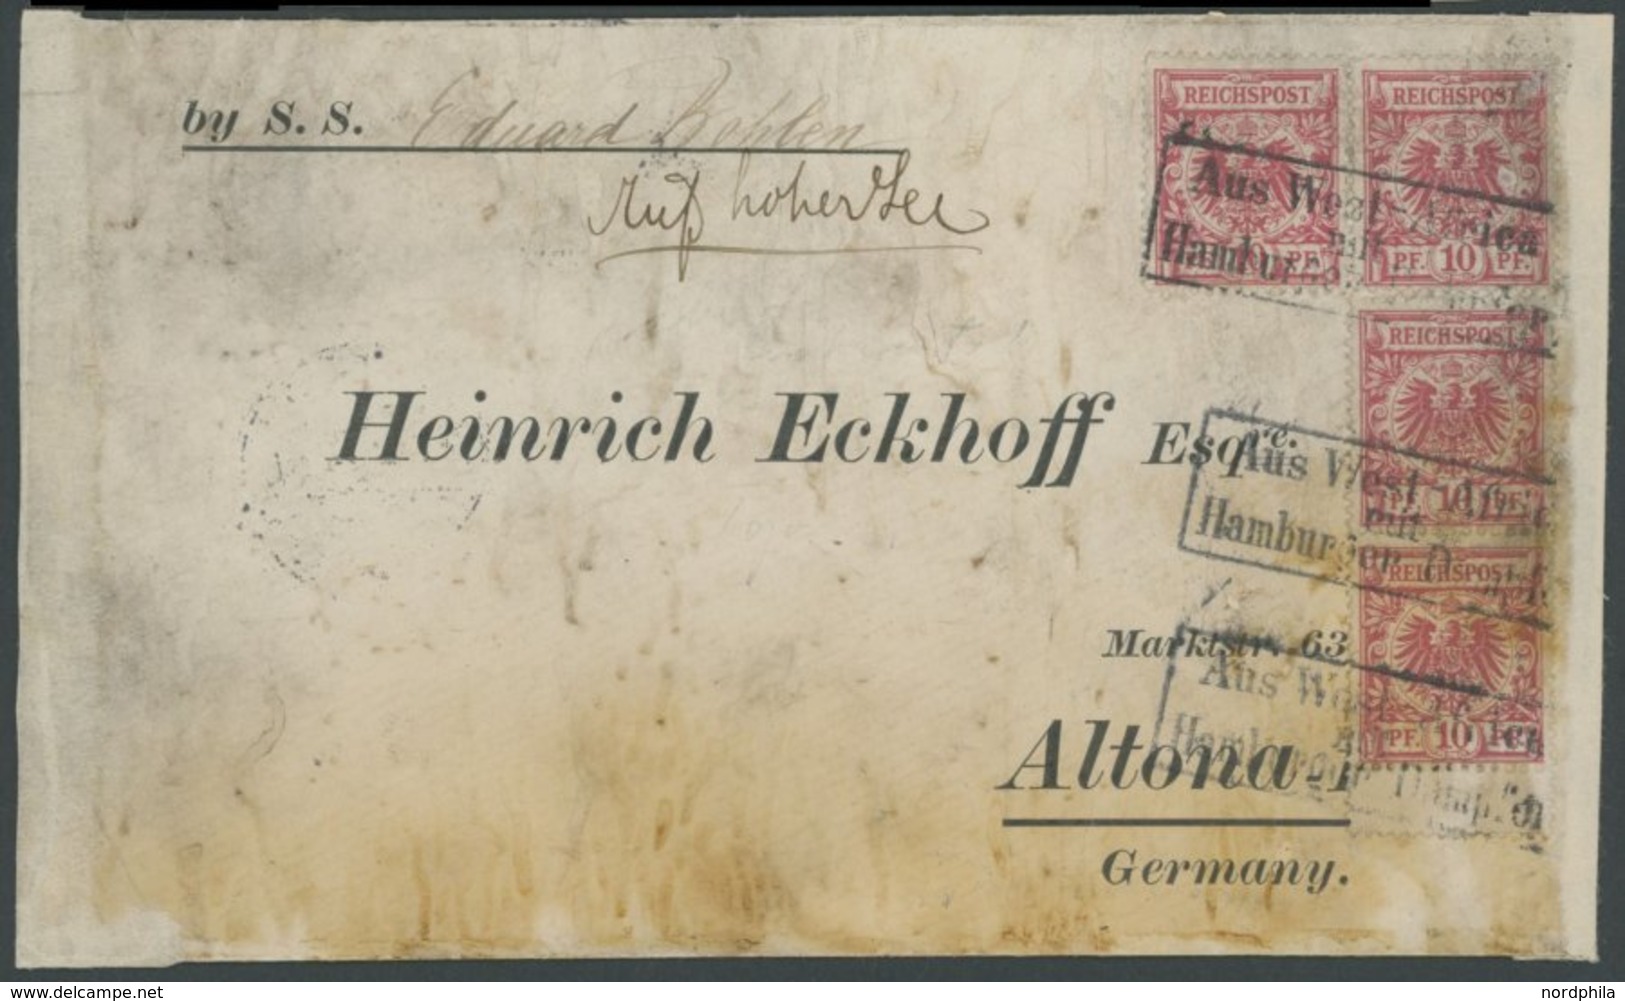 DEUTSCHE SCHIFFSPOST DR 47 BRIEF, 1894, R2 Aus Westafrica Mit Hamburger Dampfer Auf Brief By S.S: Eduard Bohlen, Handsch - Maritime